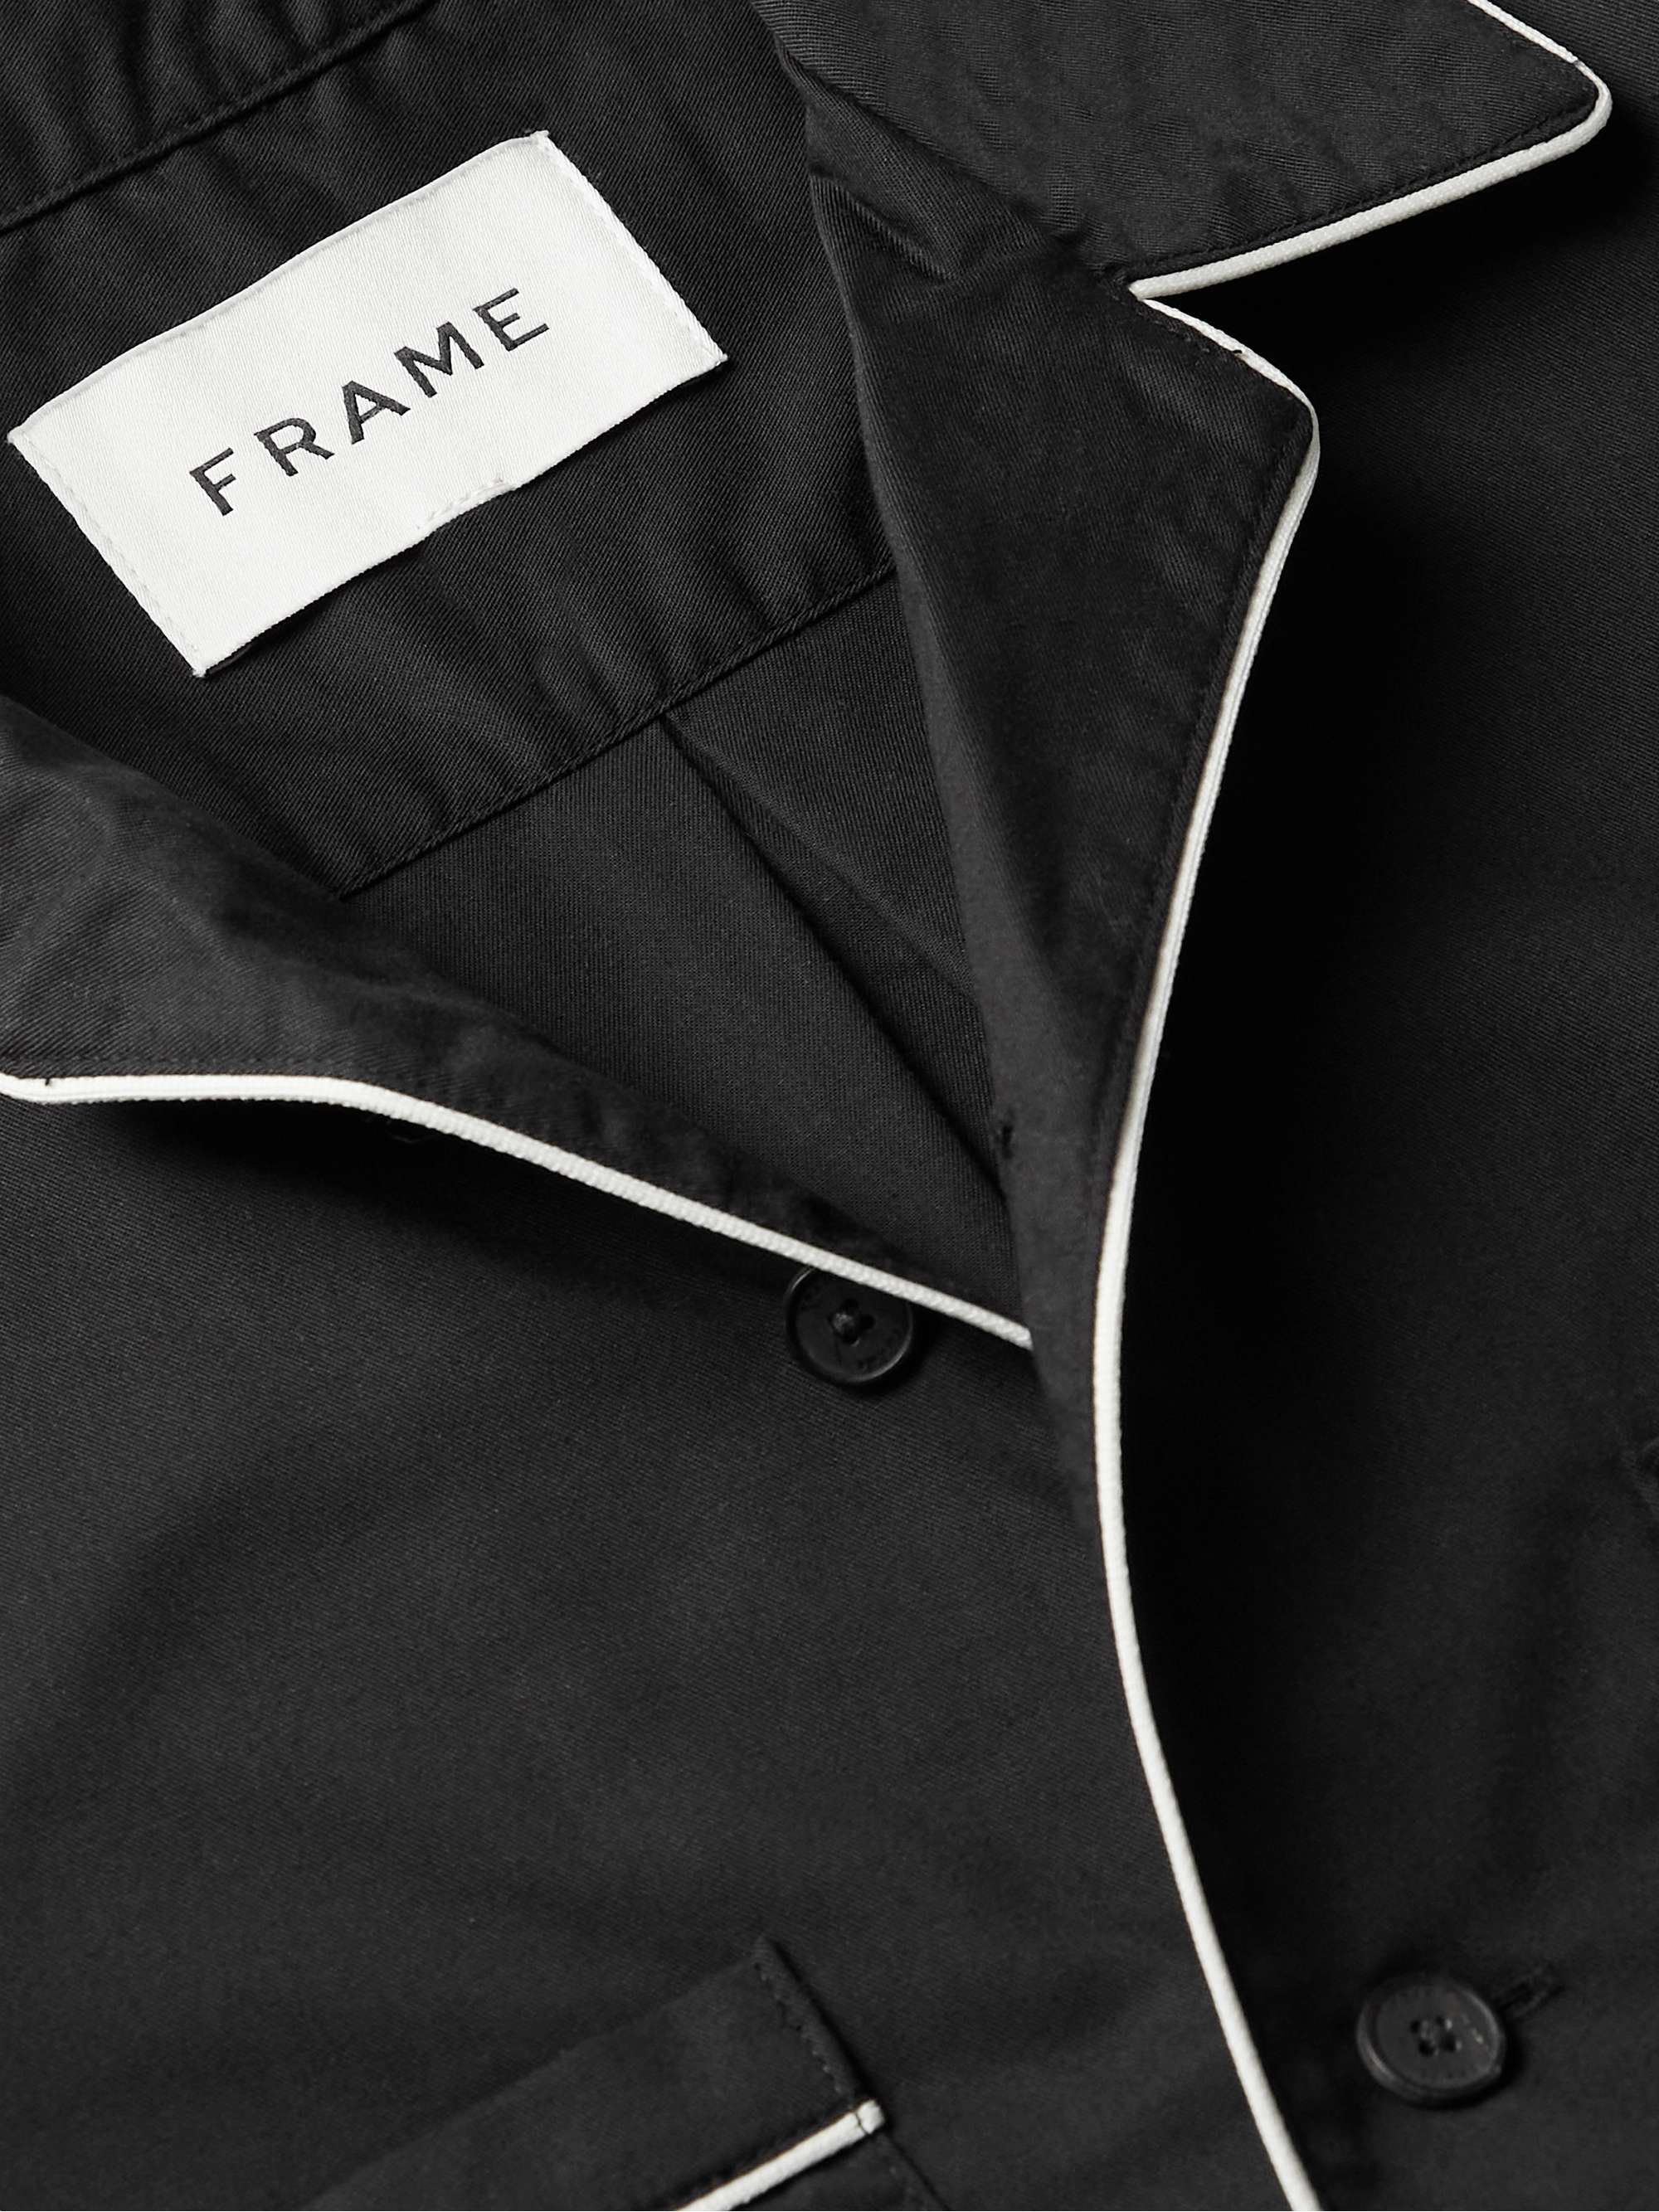 FRAME Camp-Collar Cotton-Blend Twill Shirt